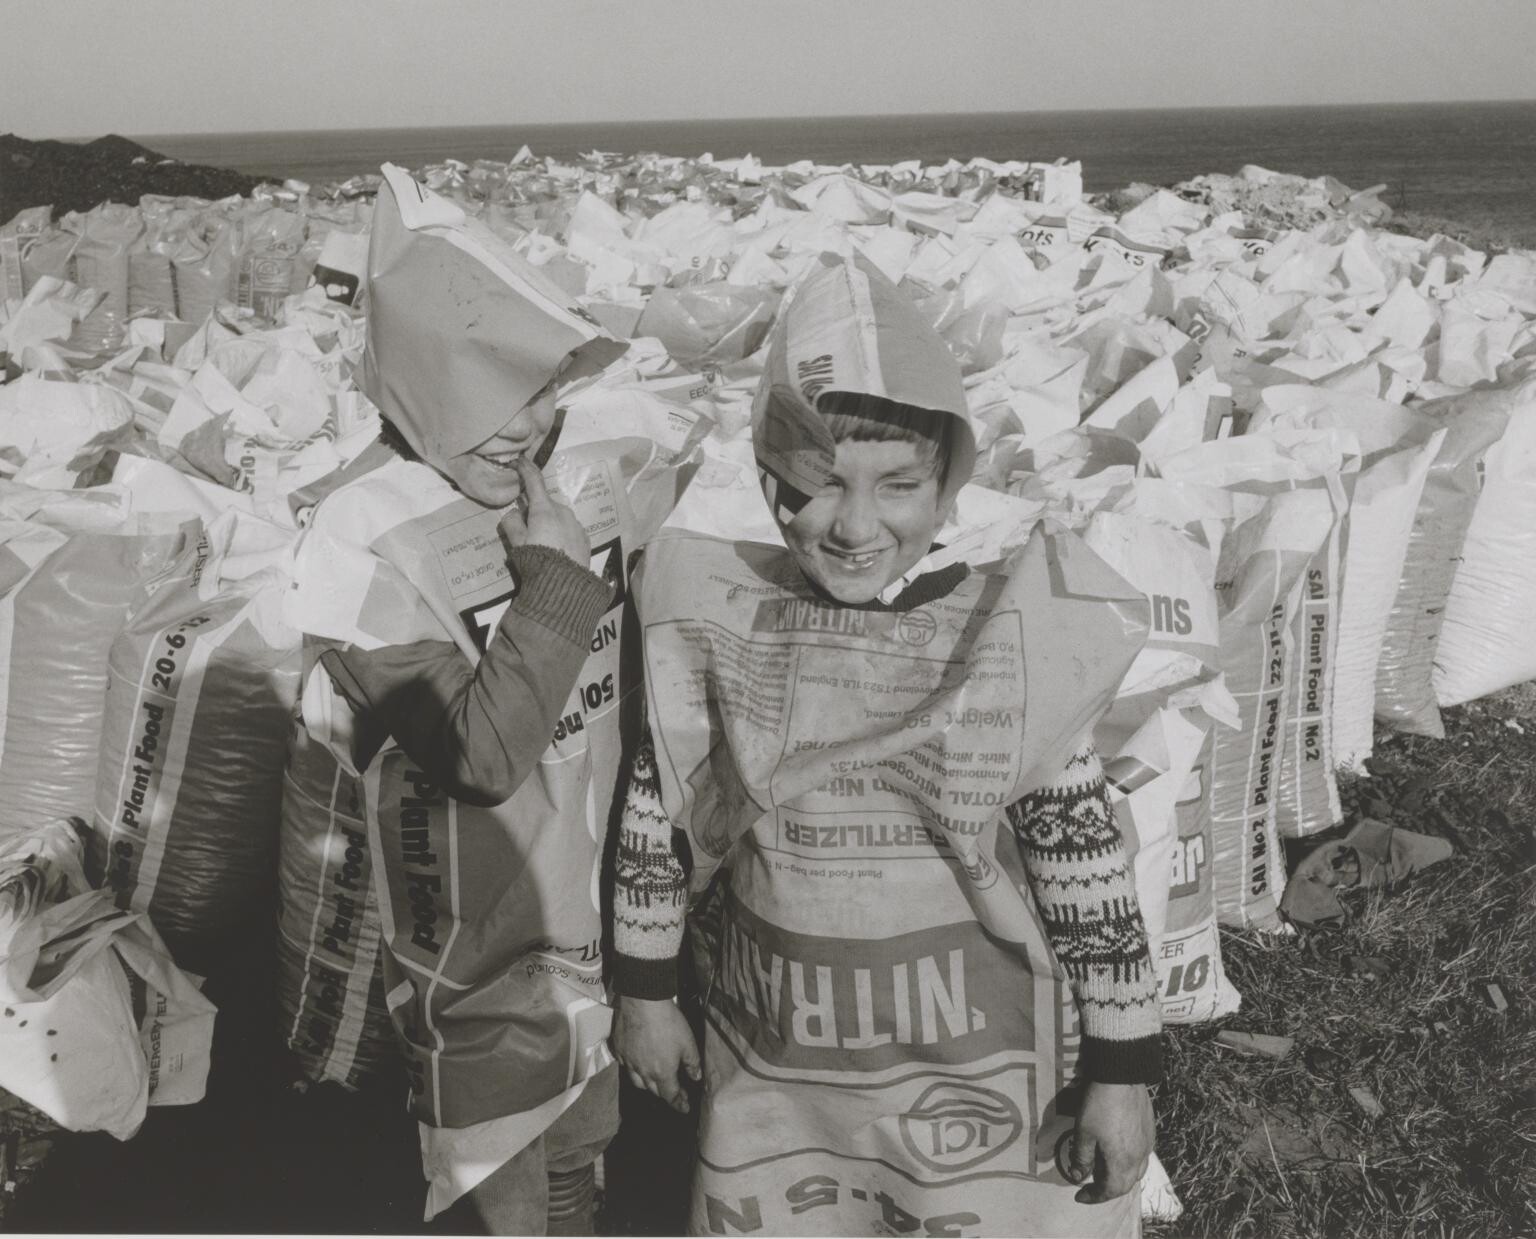 Рокер и Джон, одетые в мешки с удобрениями, 1983 год. Фотограф Крис Киллип